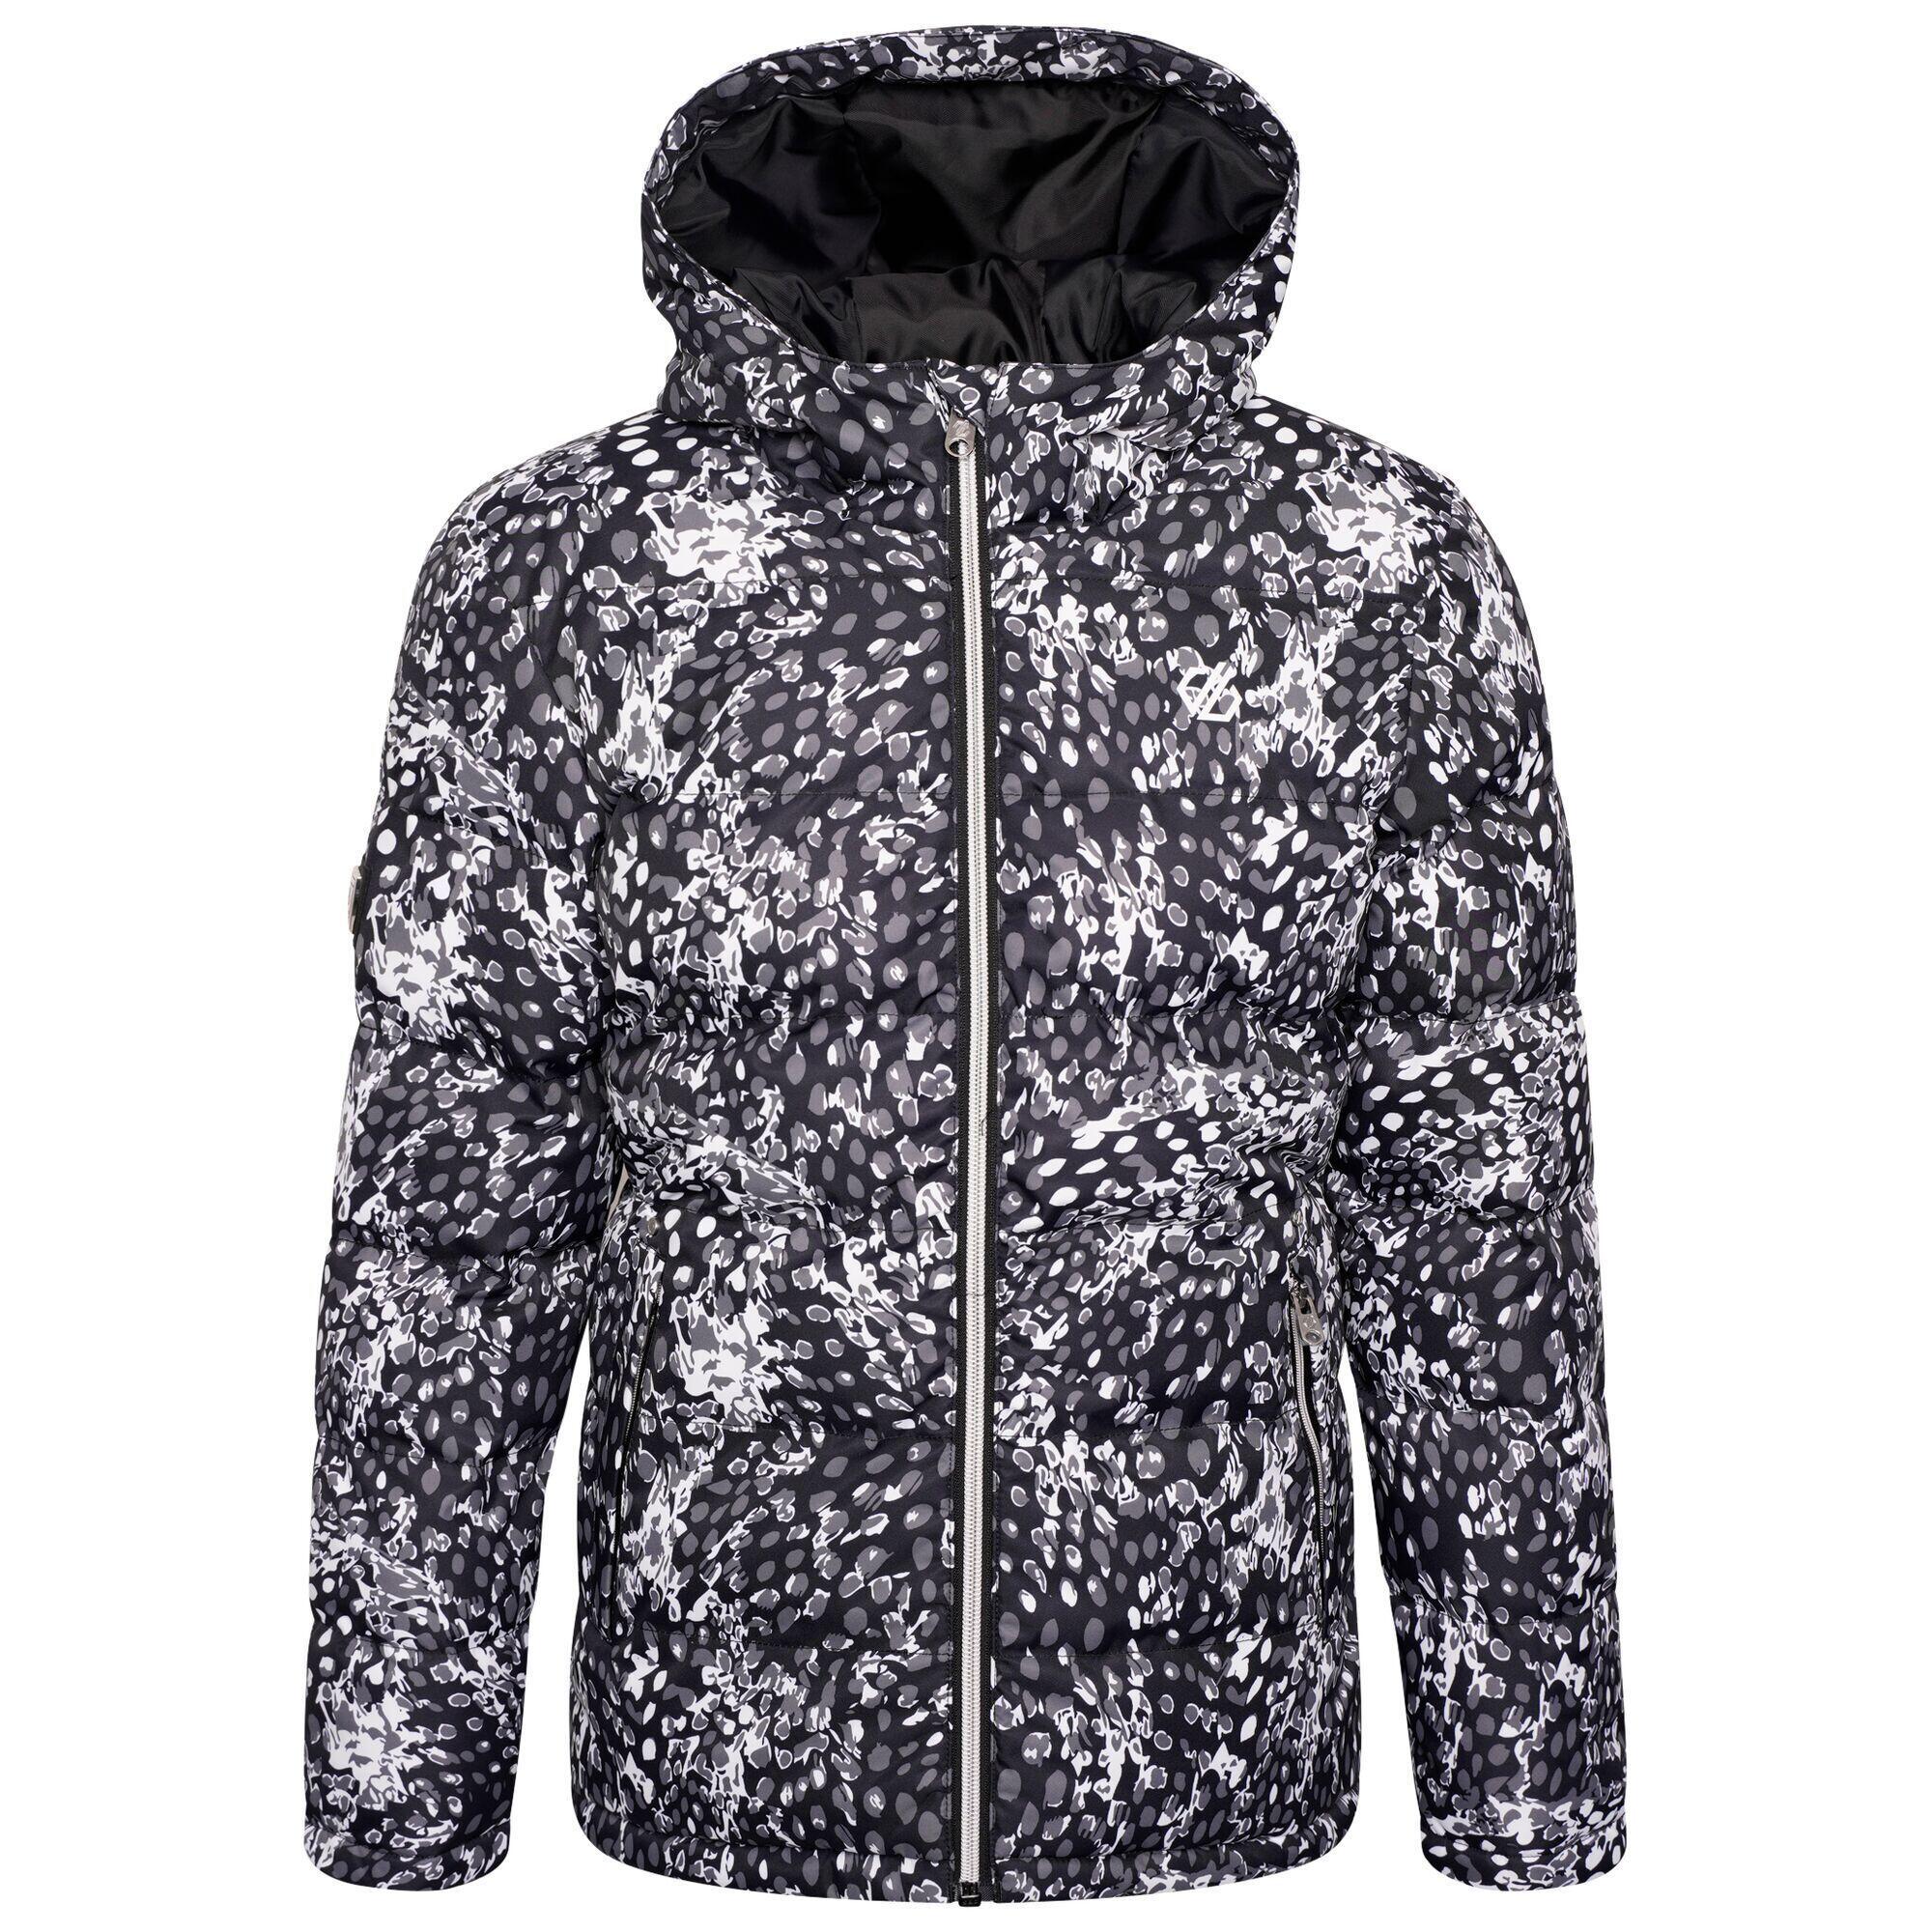 DARE 2B Girls Verdict Leopard Print Insulated Ski Jacket (Black/White)